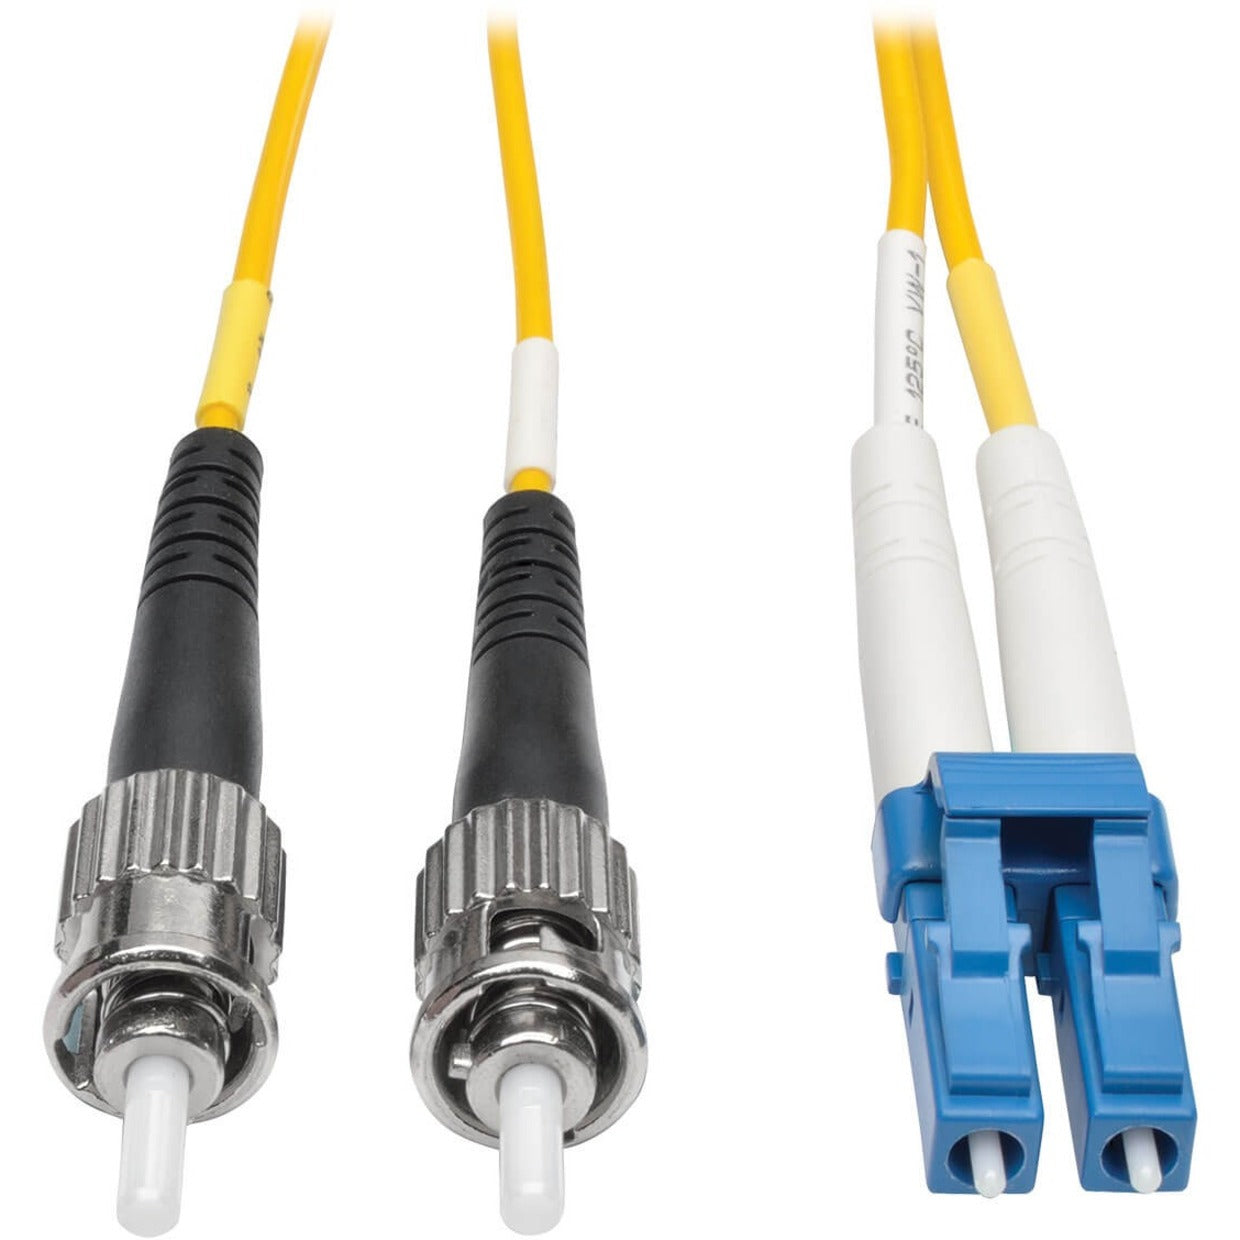 Tripp Lite N368-01M Fiber Optic Duplex Patch Cable, 3.30 ft, Yellow, Lifetime Warranty